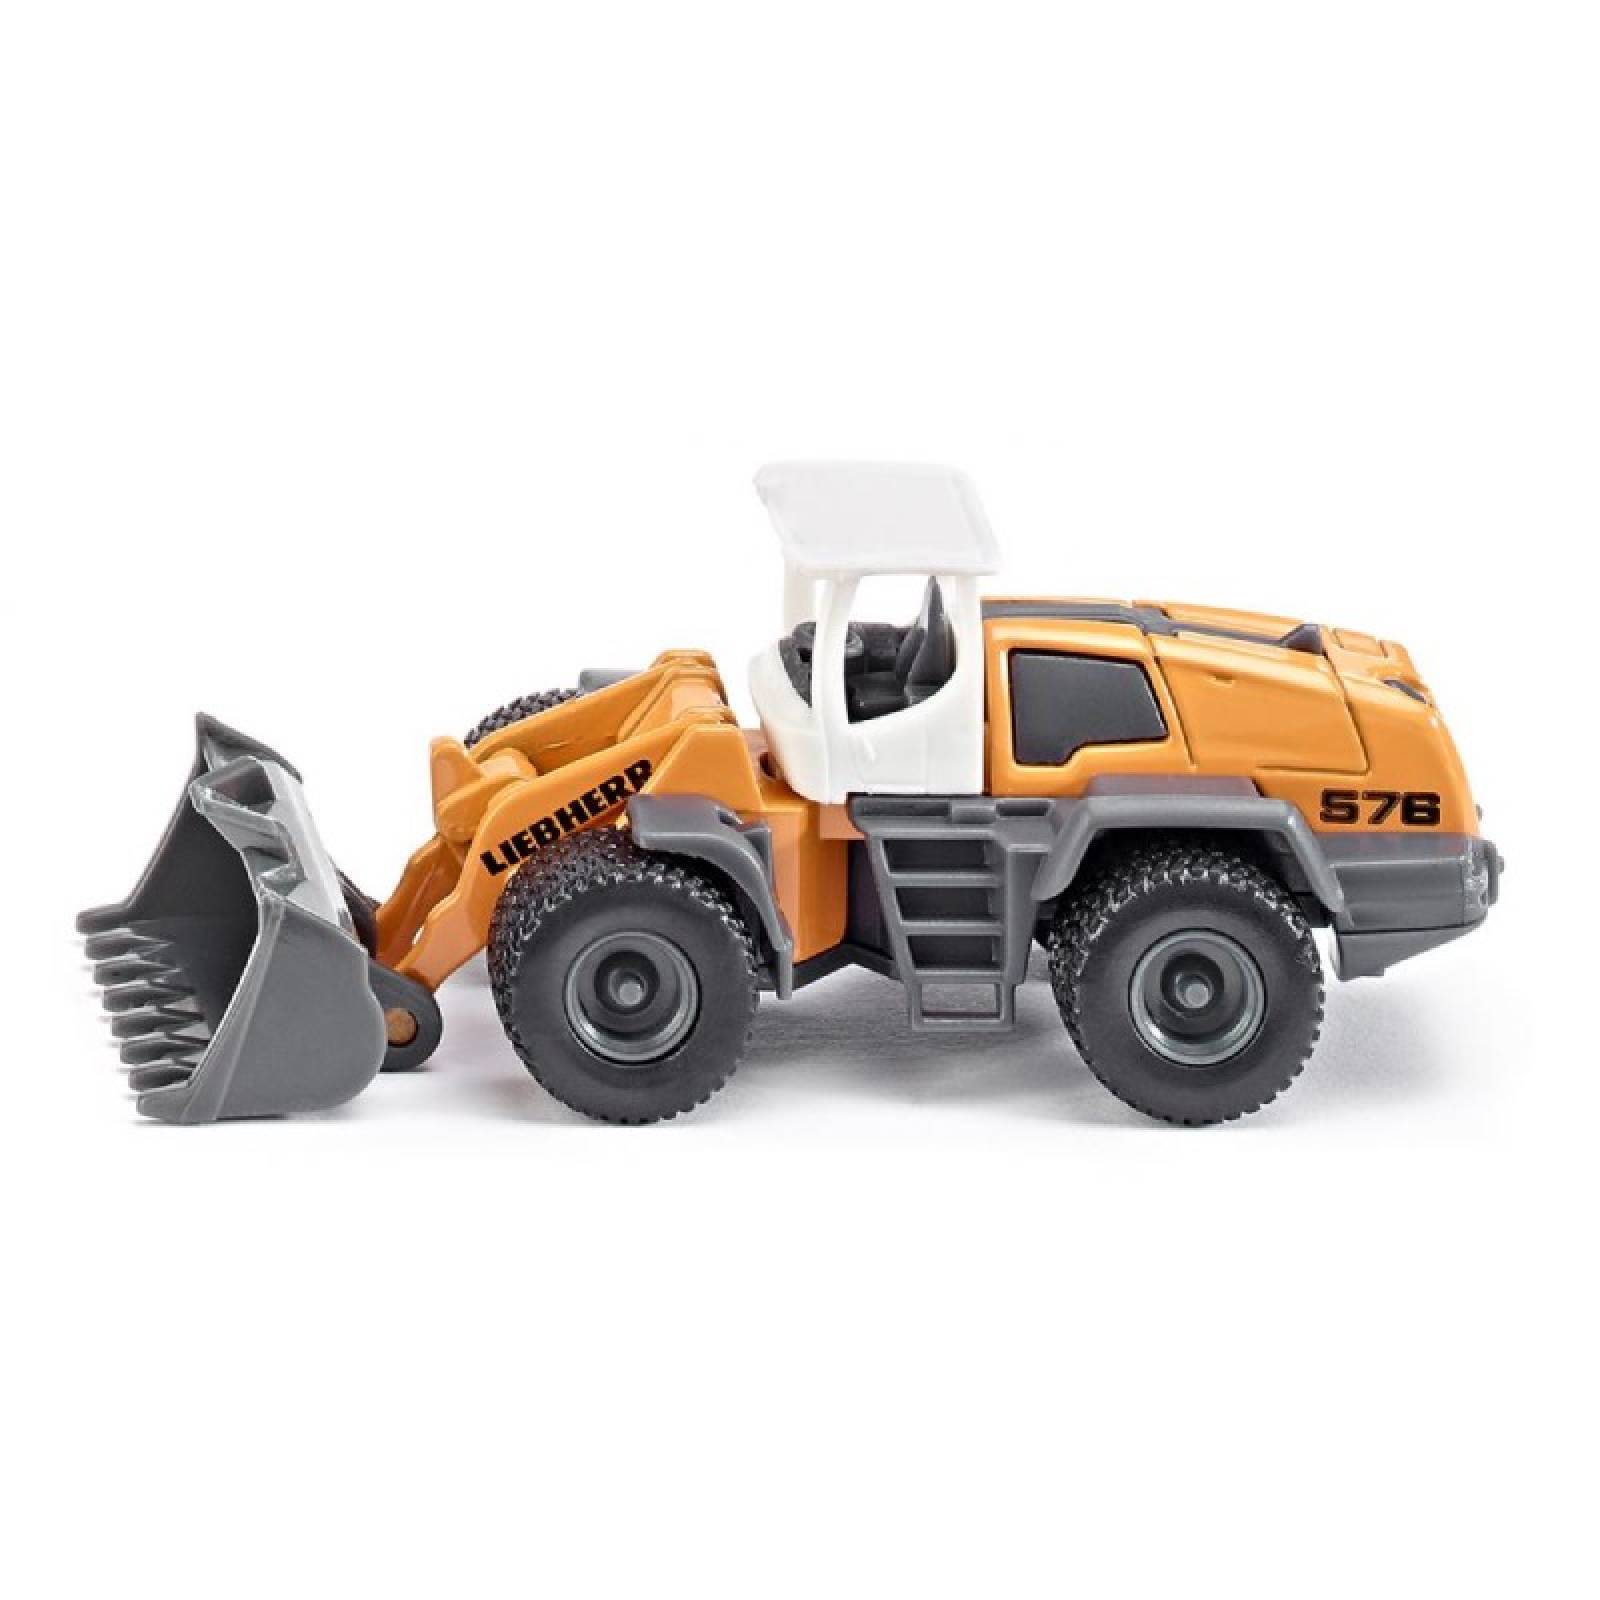 Liebherr Four Wheel Loader - Single Die-Cast Toy Vehicle 1477 3+